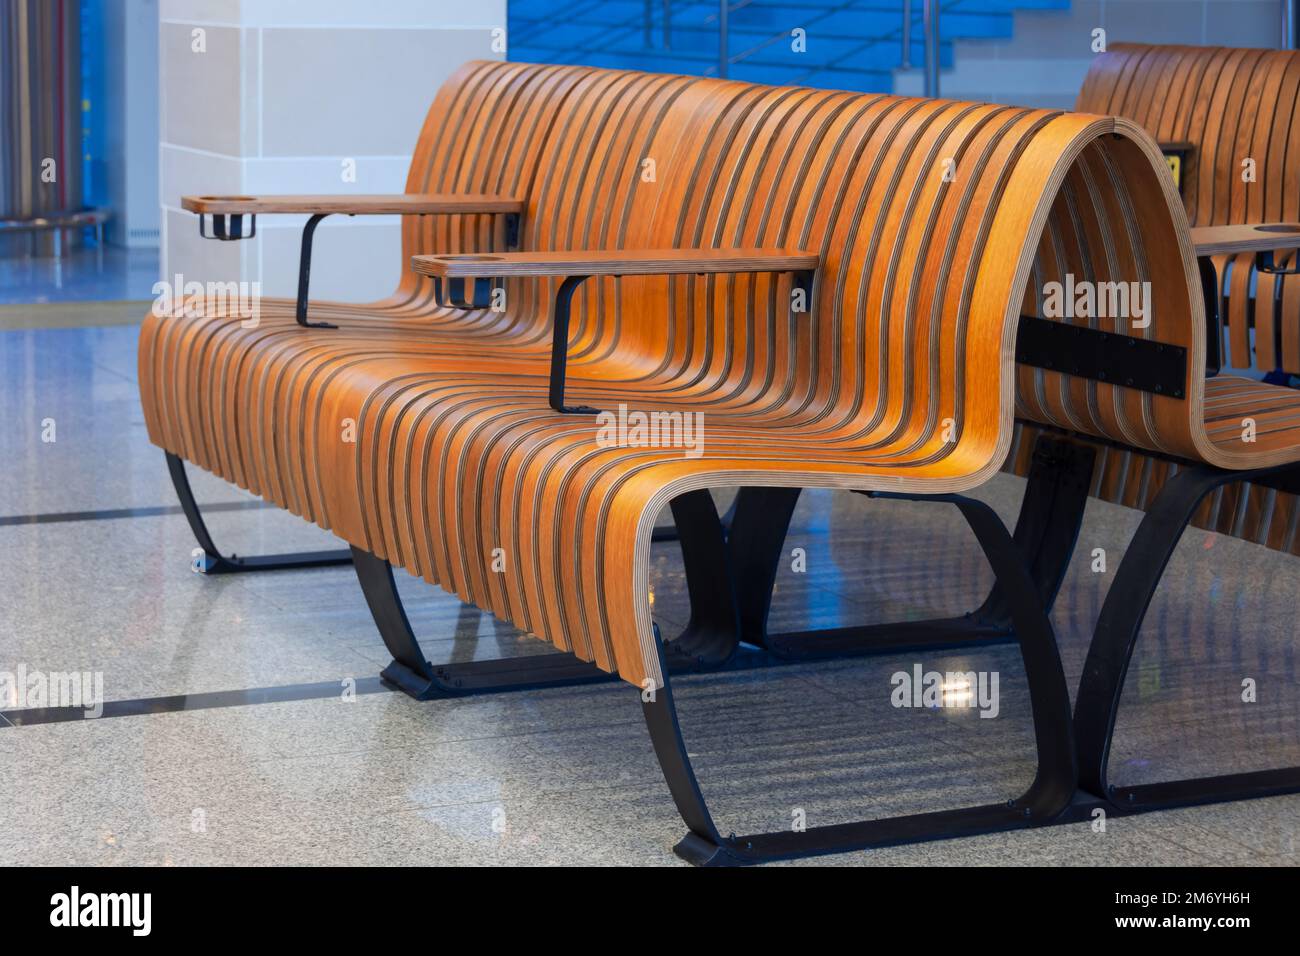 Bancos de madera y líneas de madera tallada en la sala de espera de pasajeros Foto de stock